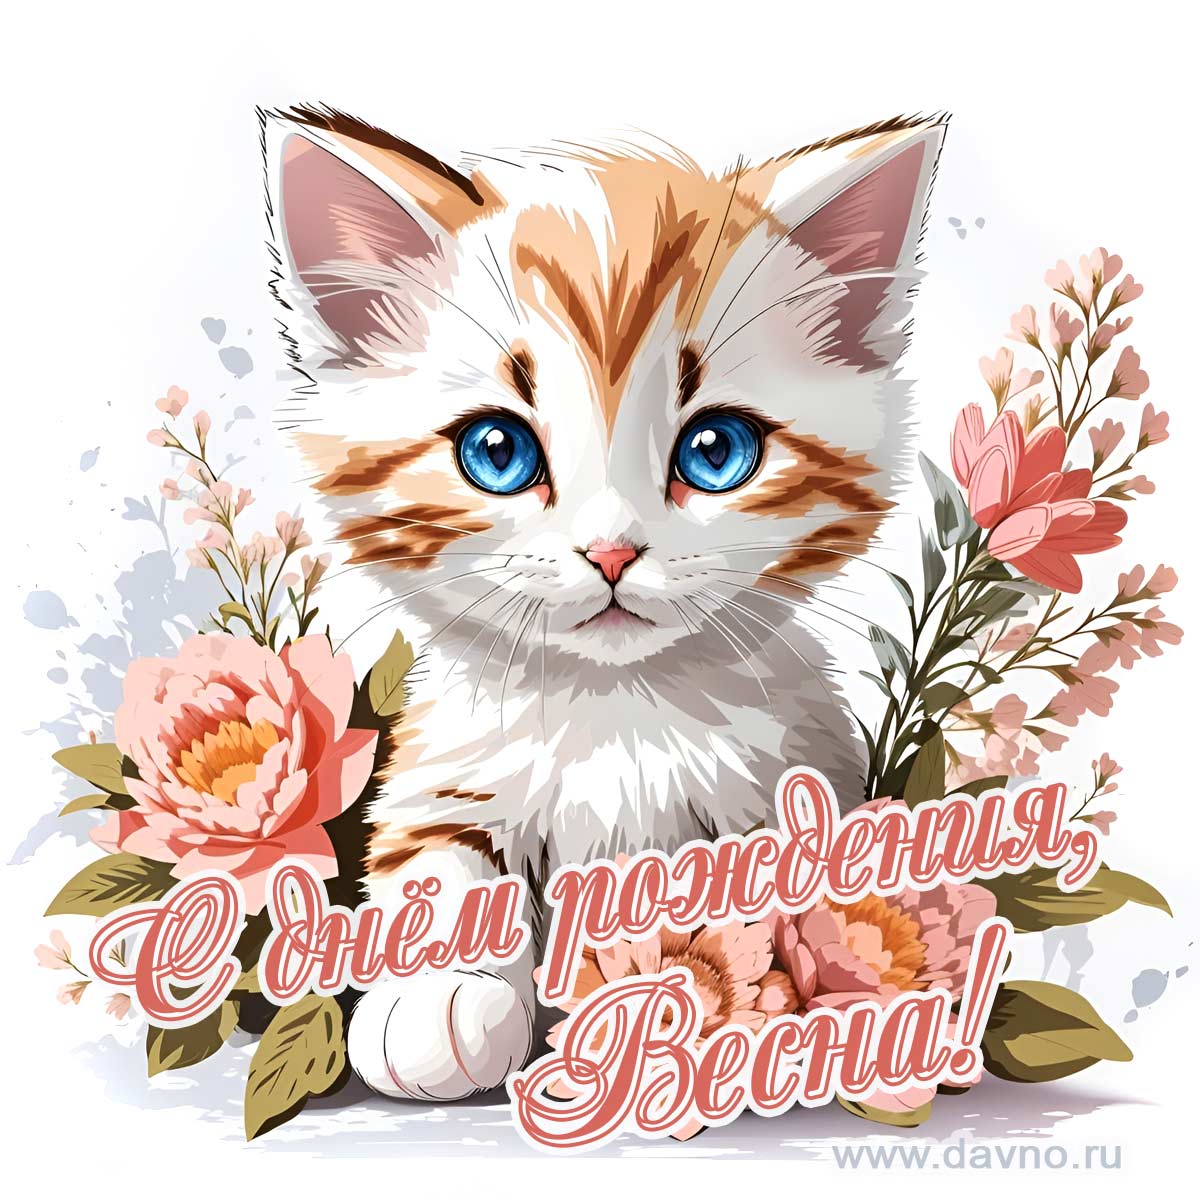 Новая рисованная поздравительная открытка для Весны с котёнком